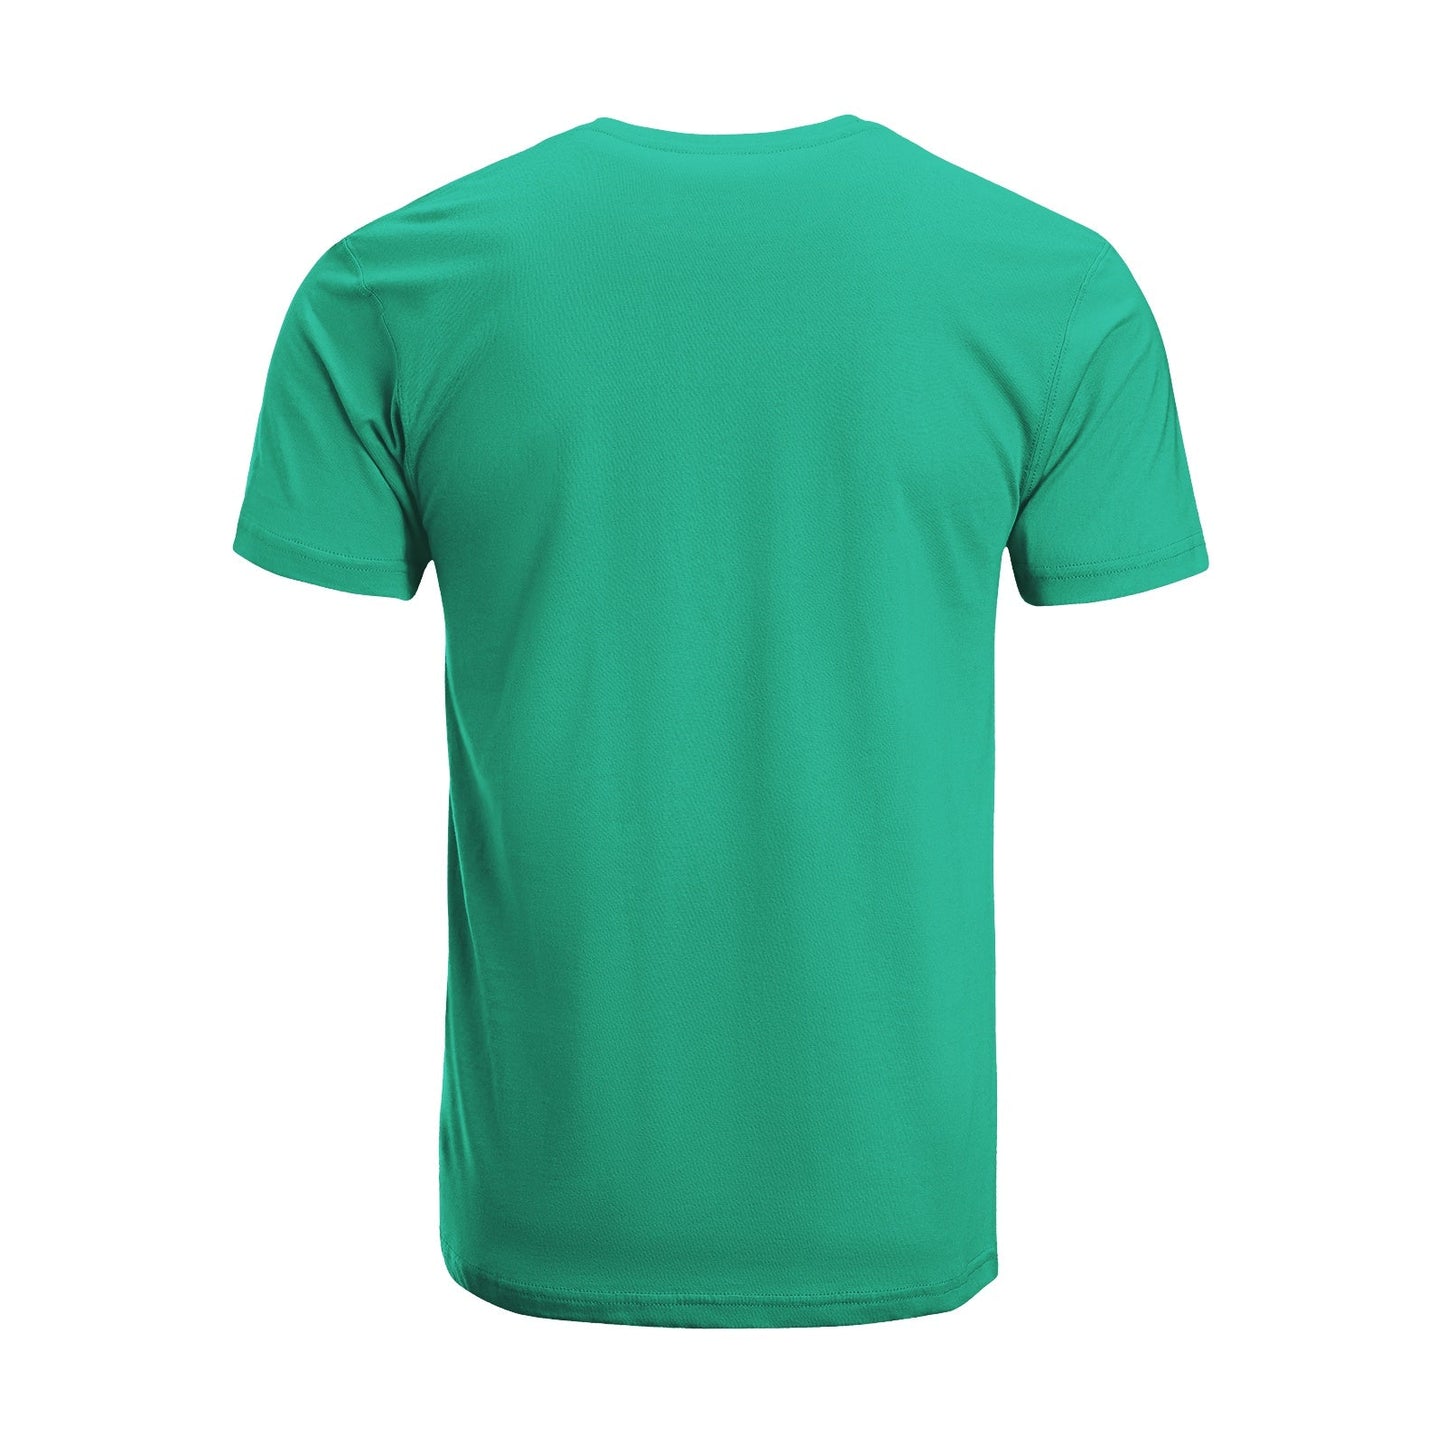 Unisex Short Sleeve Crew Neck Cotton Jersey T-Shirt TRUCK 30